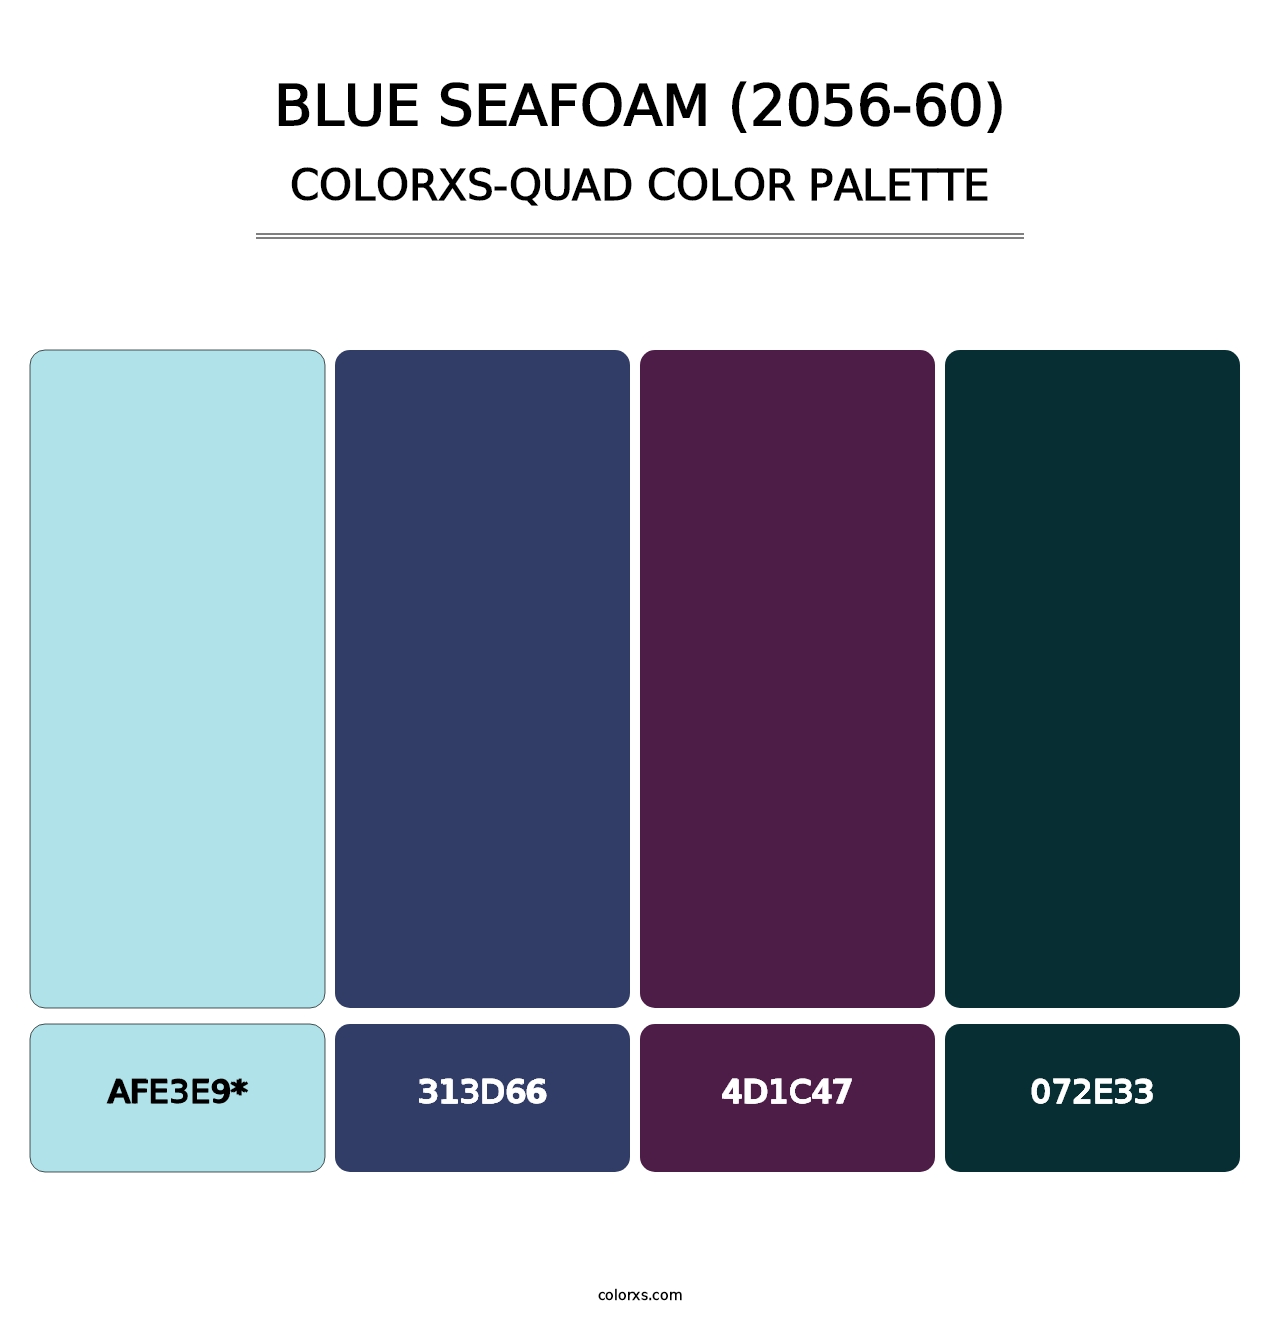 Blue Seafoam (2056-60) - Colorxs Quad Palette